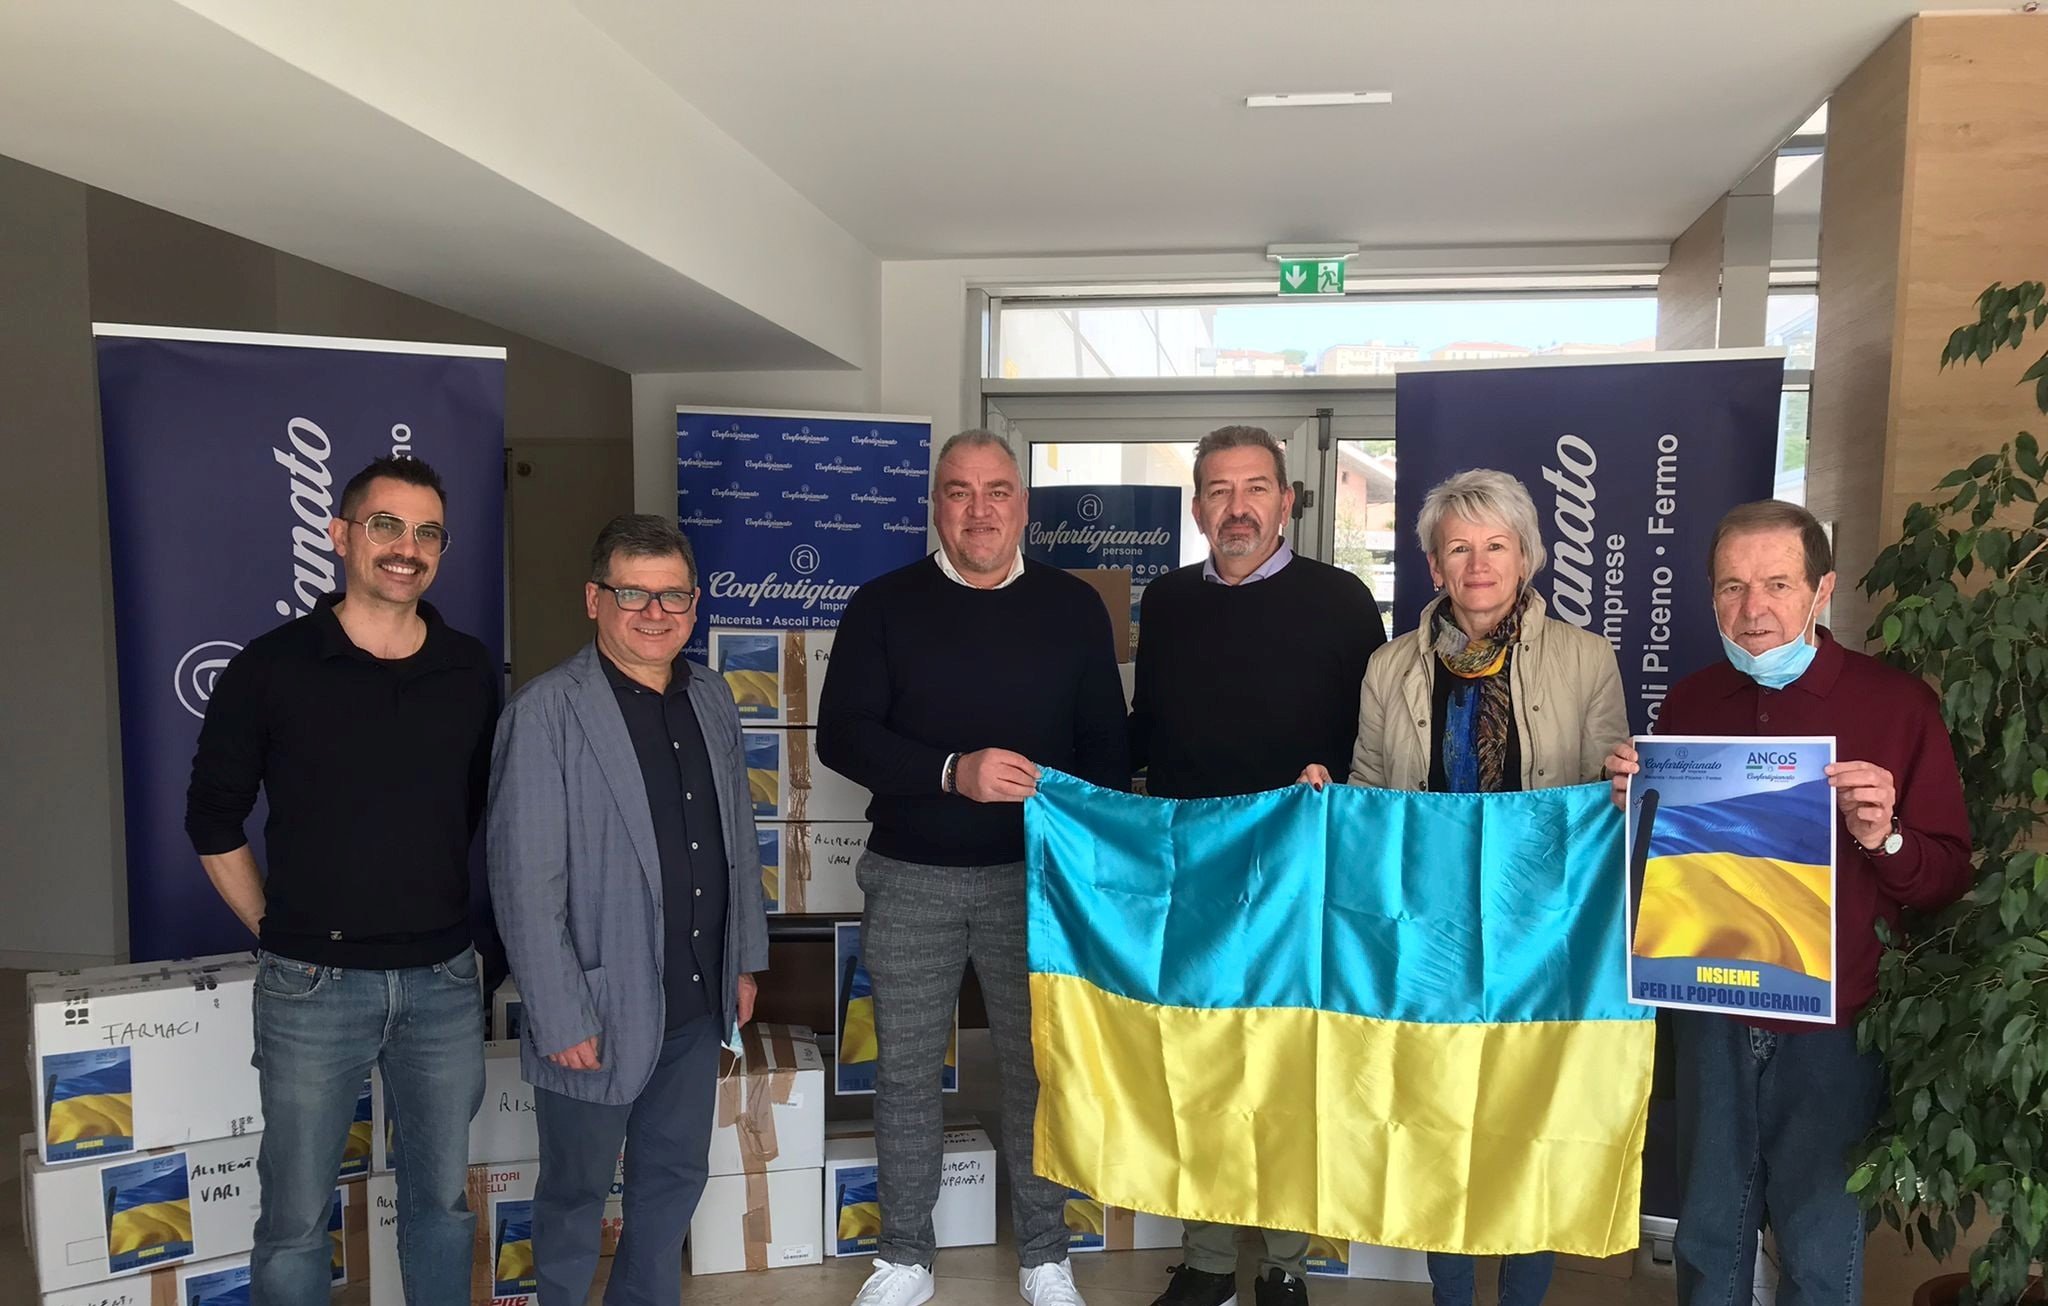 Ukrainian Community in Marke